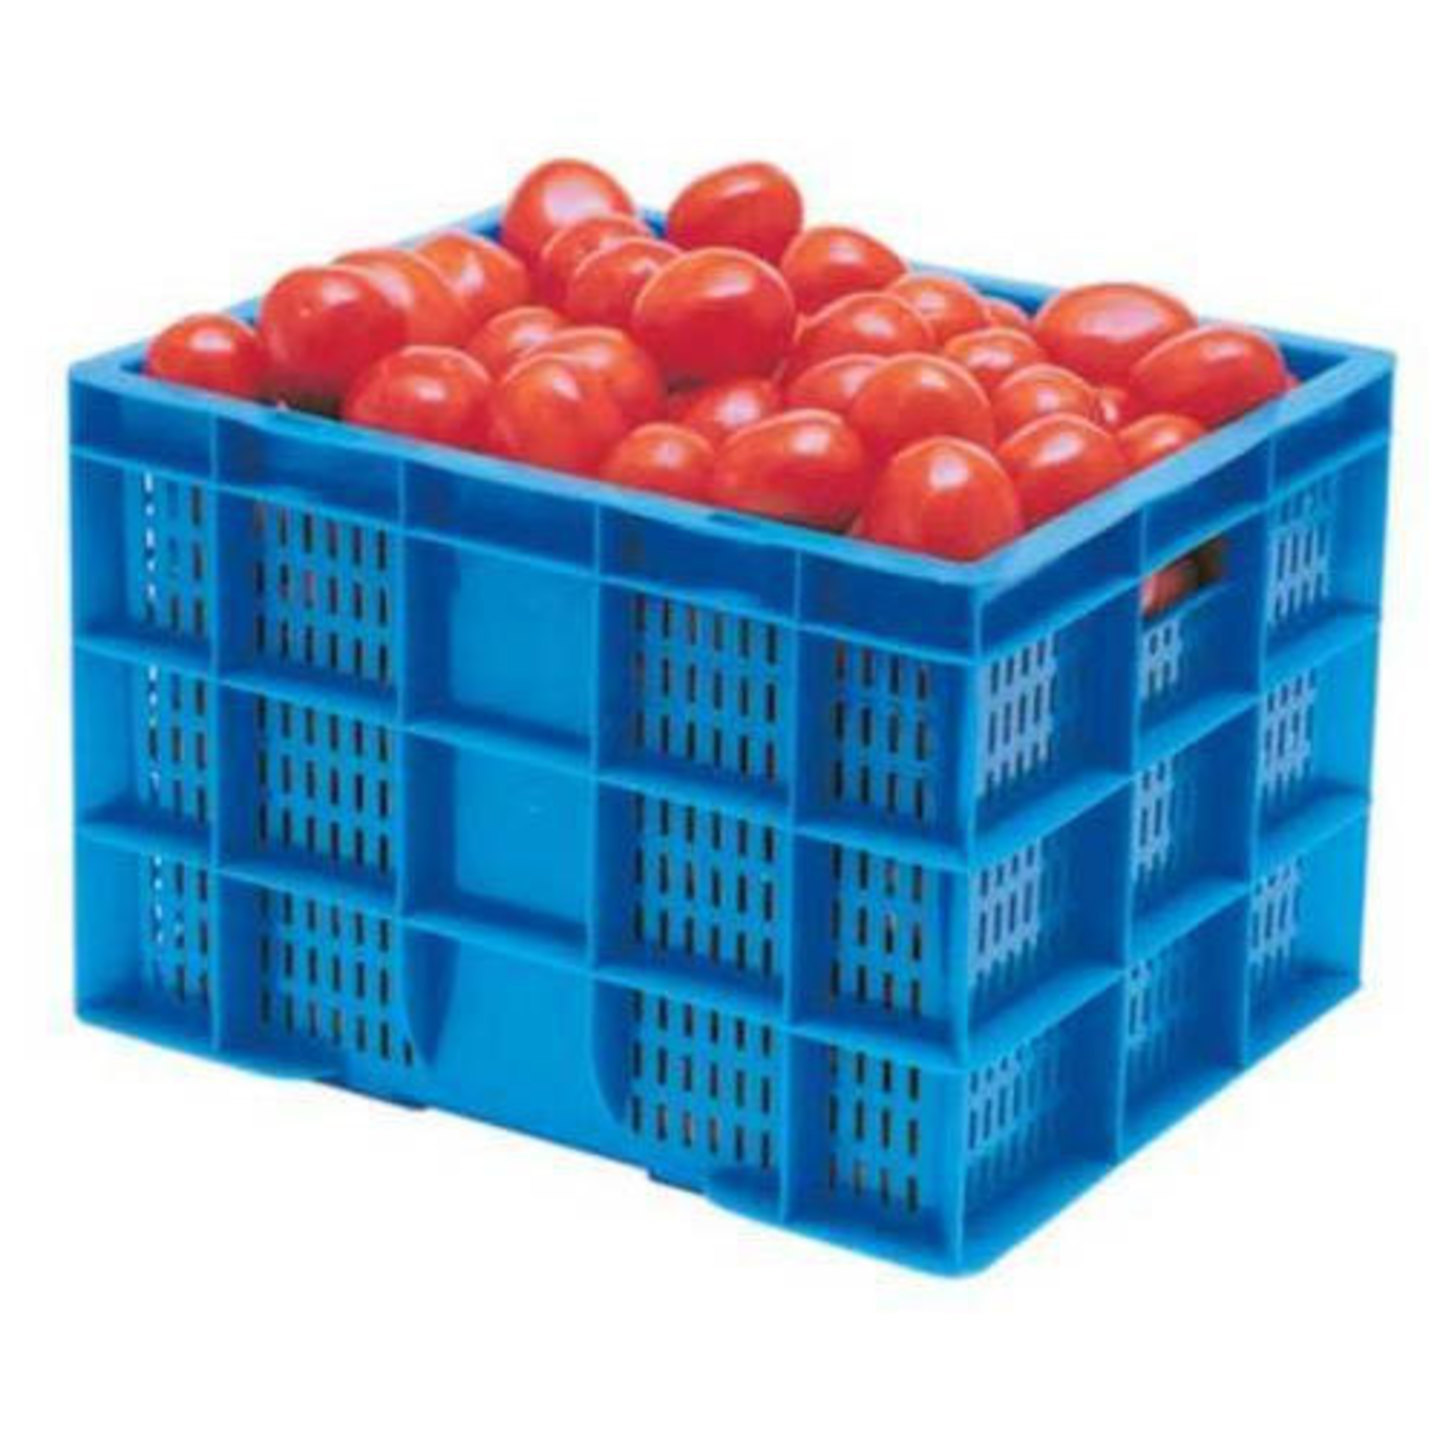 Tomato 1 crate (30 kgs)